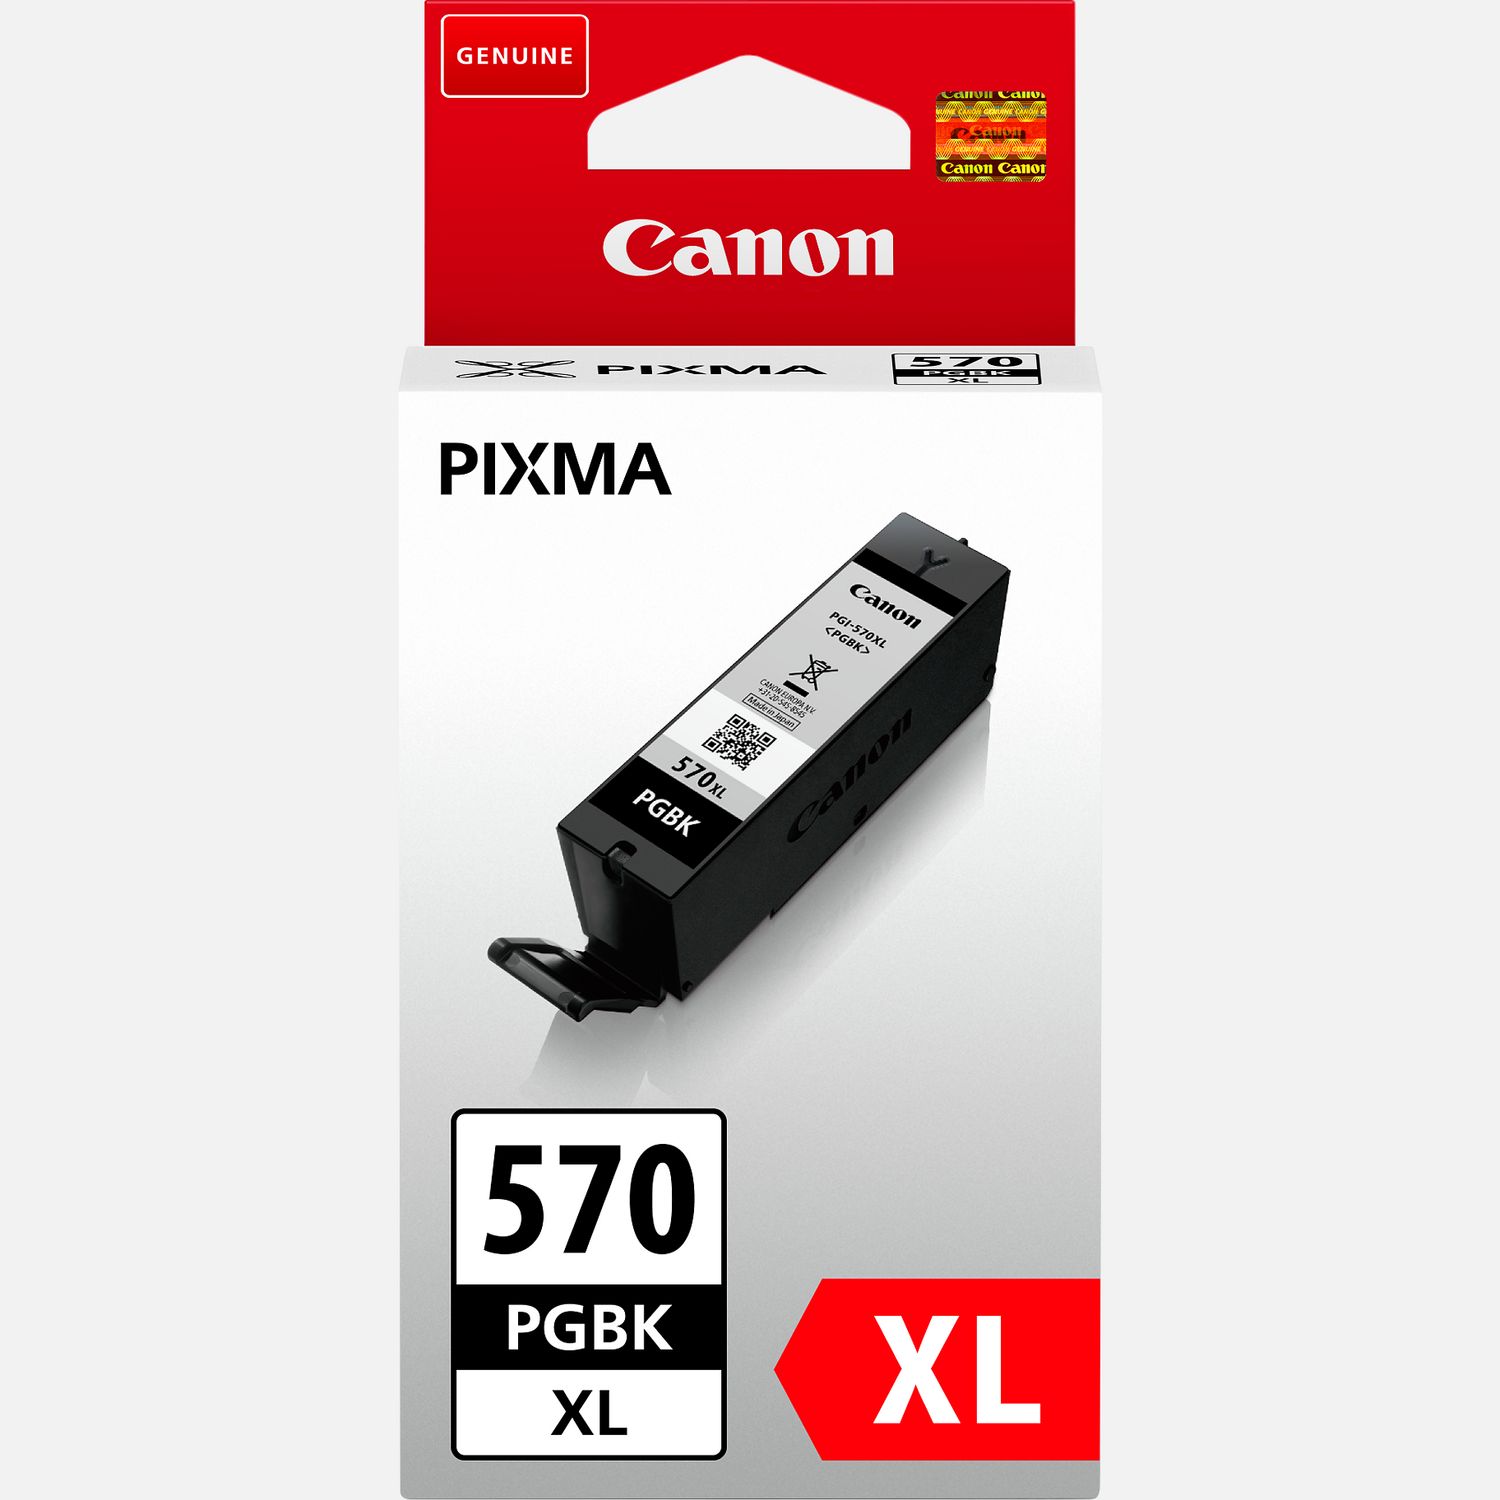 Bon plan  : profitez des cartouches d'encre Canon XL en